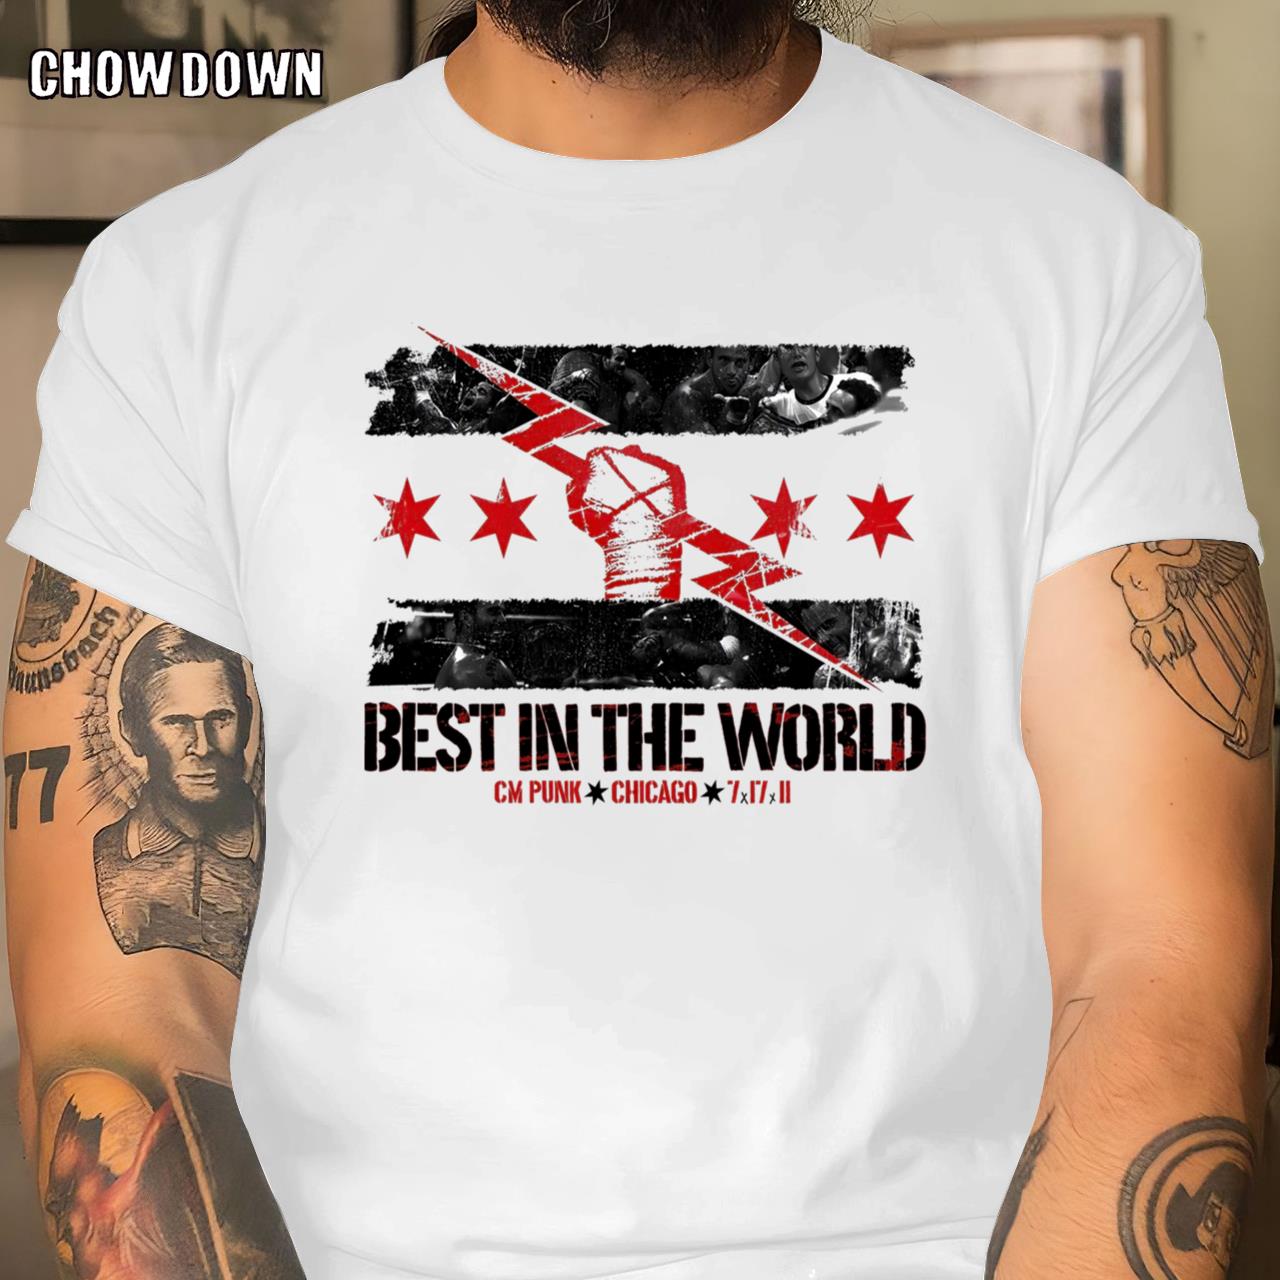 CM Punk T-shirt Danhausen x CM Punk Best In The WorldHausen